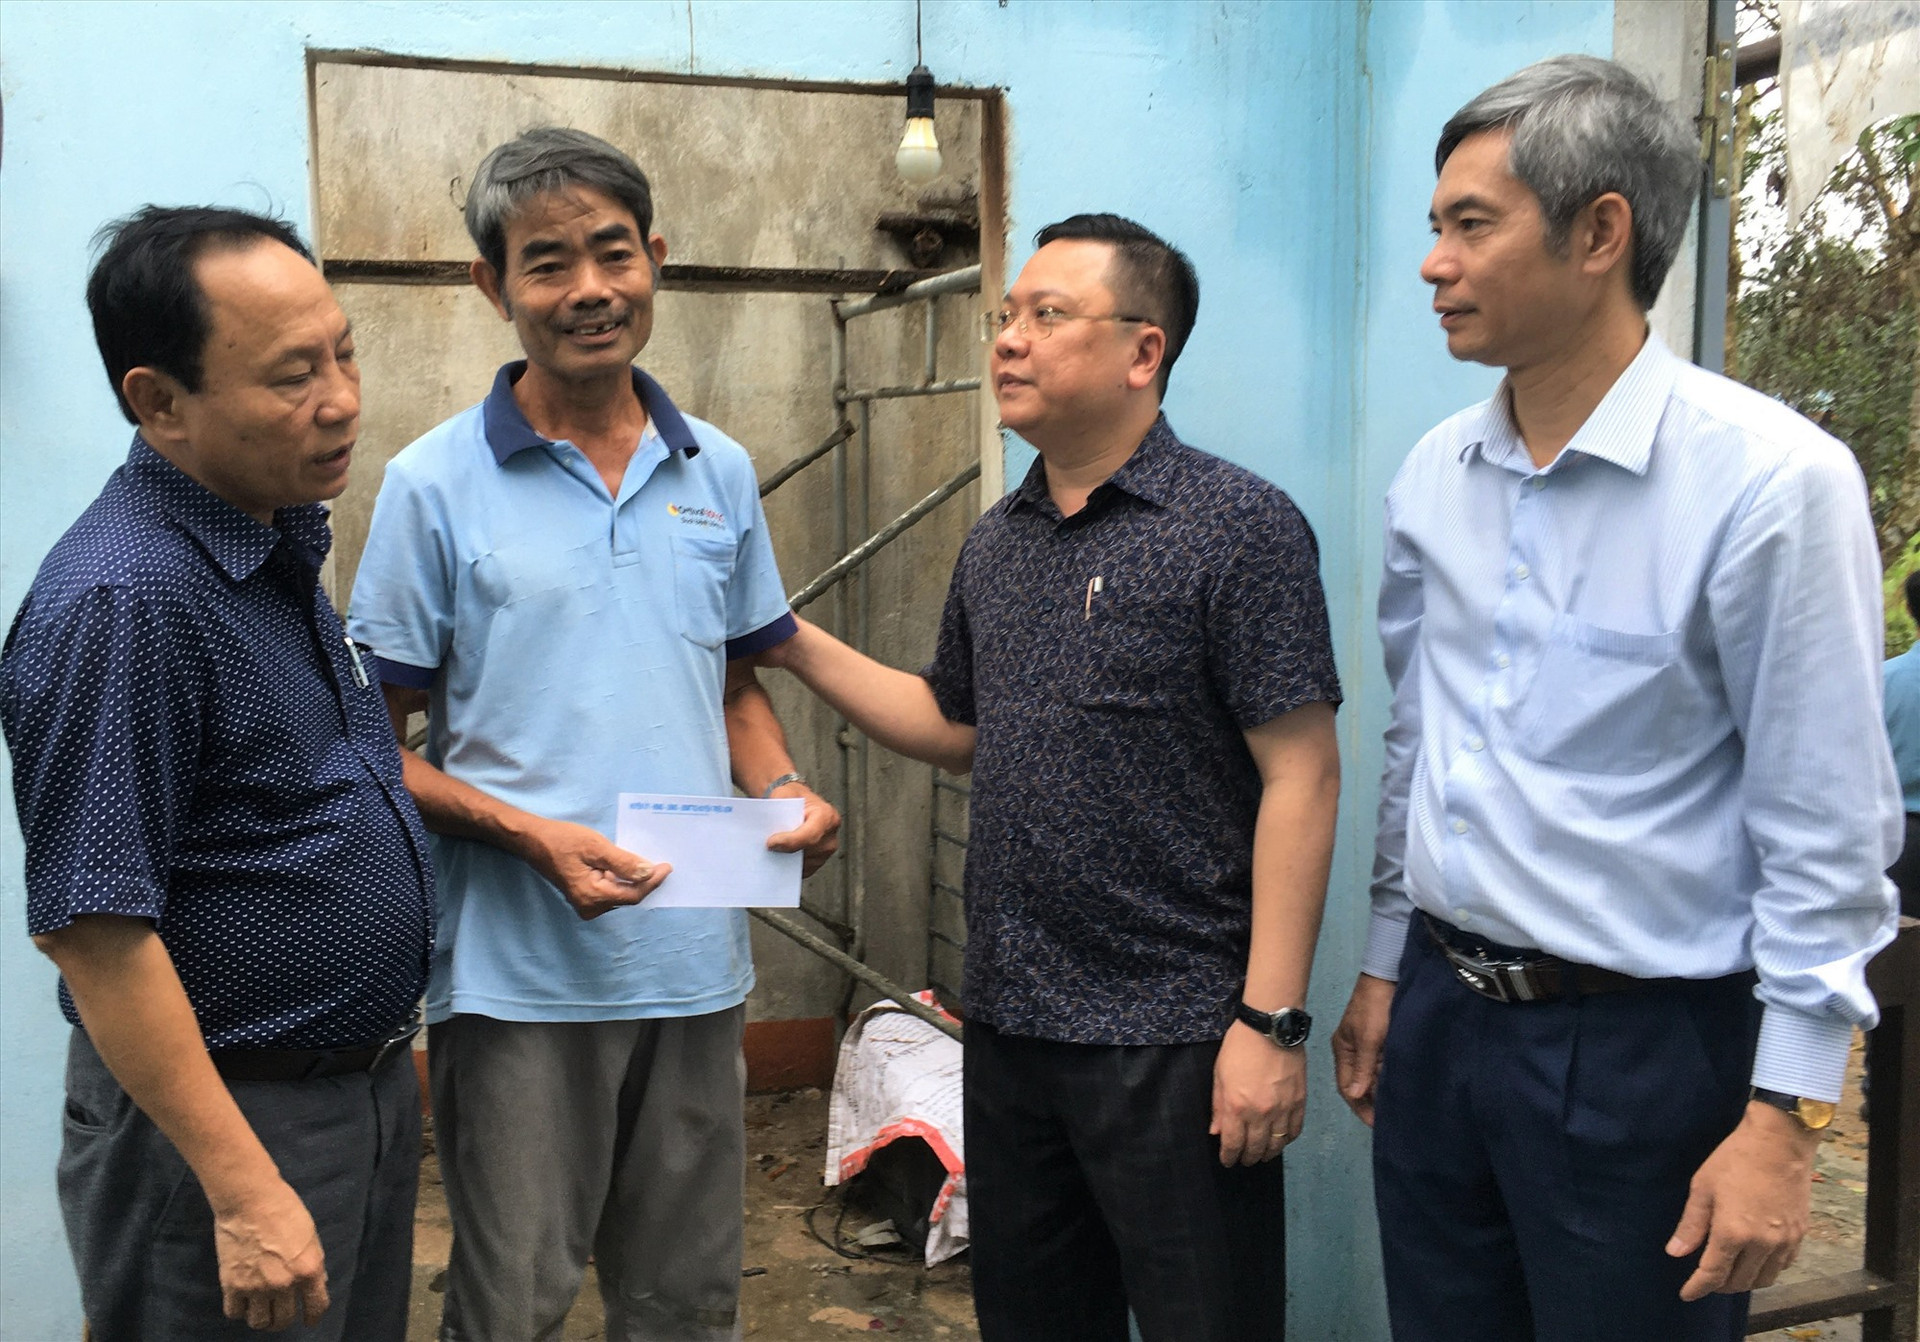 Lãnh đạo huyện Triệu Sơn và Phú Ninh thăm hỏi, hỗ trợ người dân bị thiệt hại do bão lũ. Ảnh: HẢI CHÂU